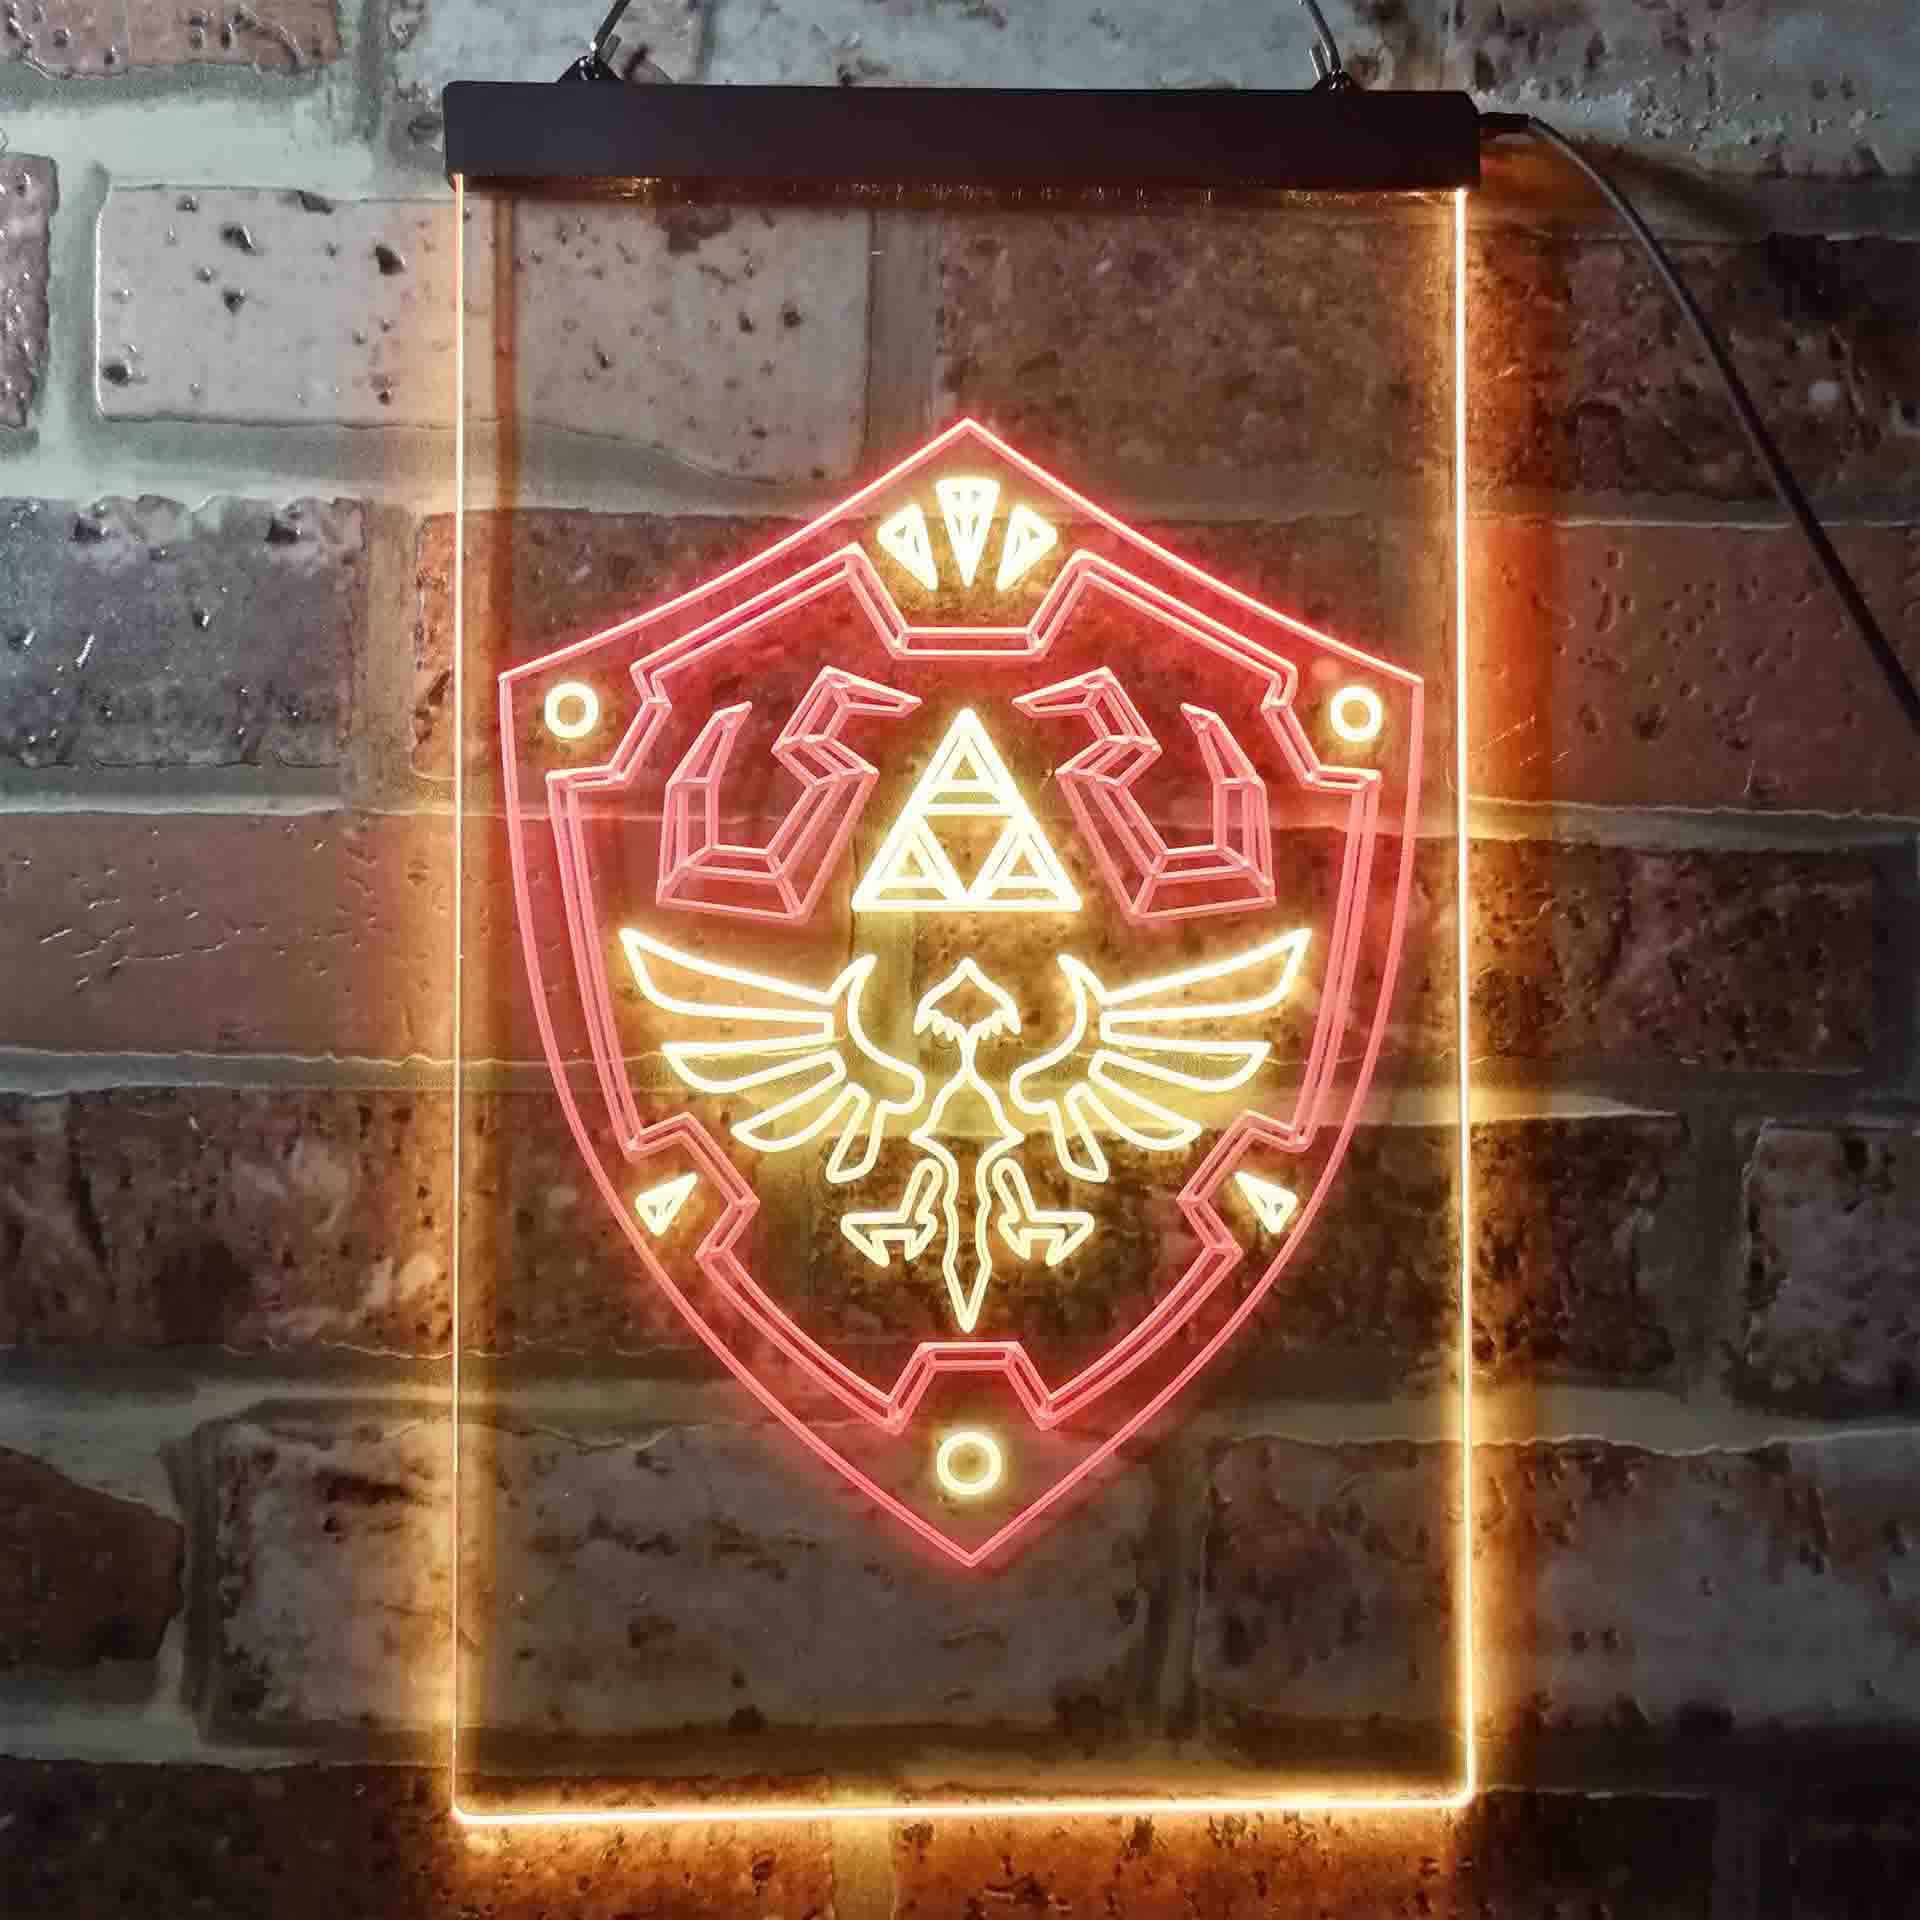 Legend of Zelda LED Sign Illuminated Gaming Room Decor Zelda Link Holding  Goddess Sword & Hylian Shield Zelda Gifts, Man Cave Light 